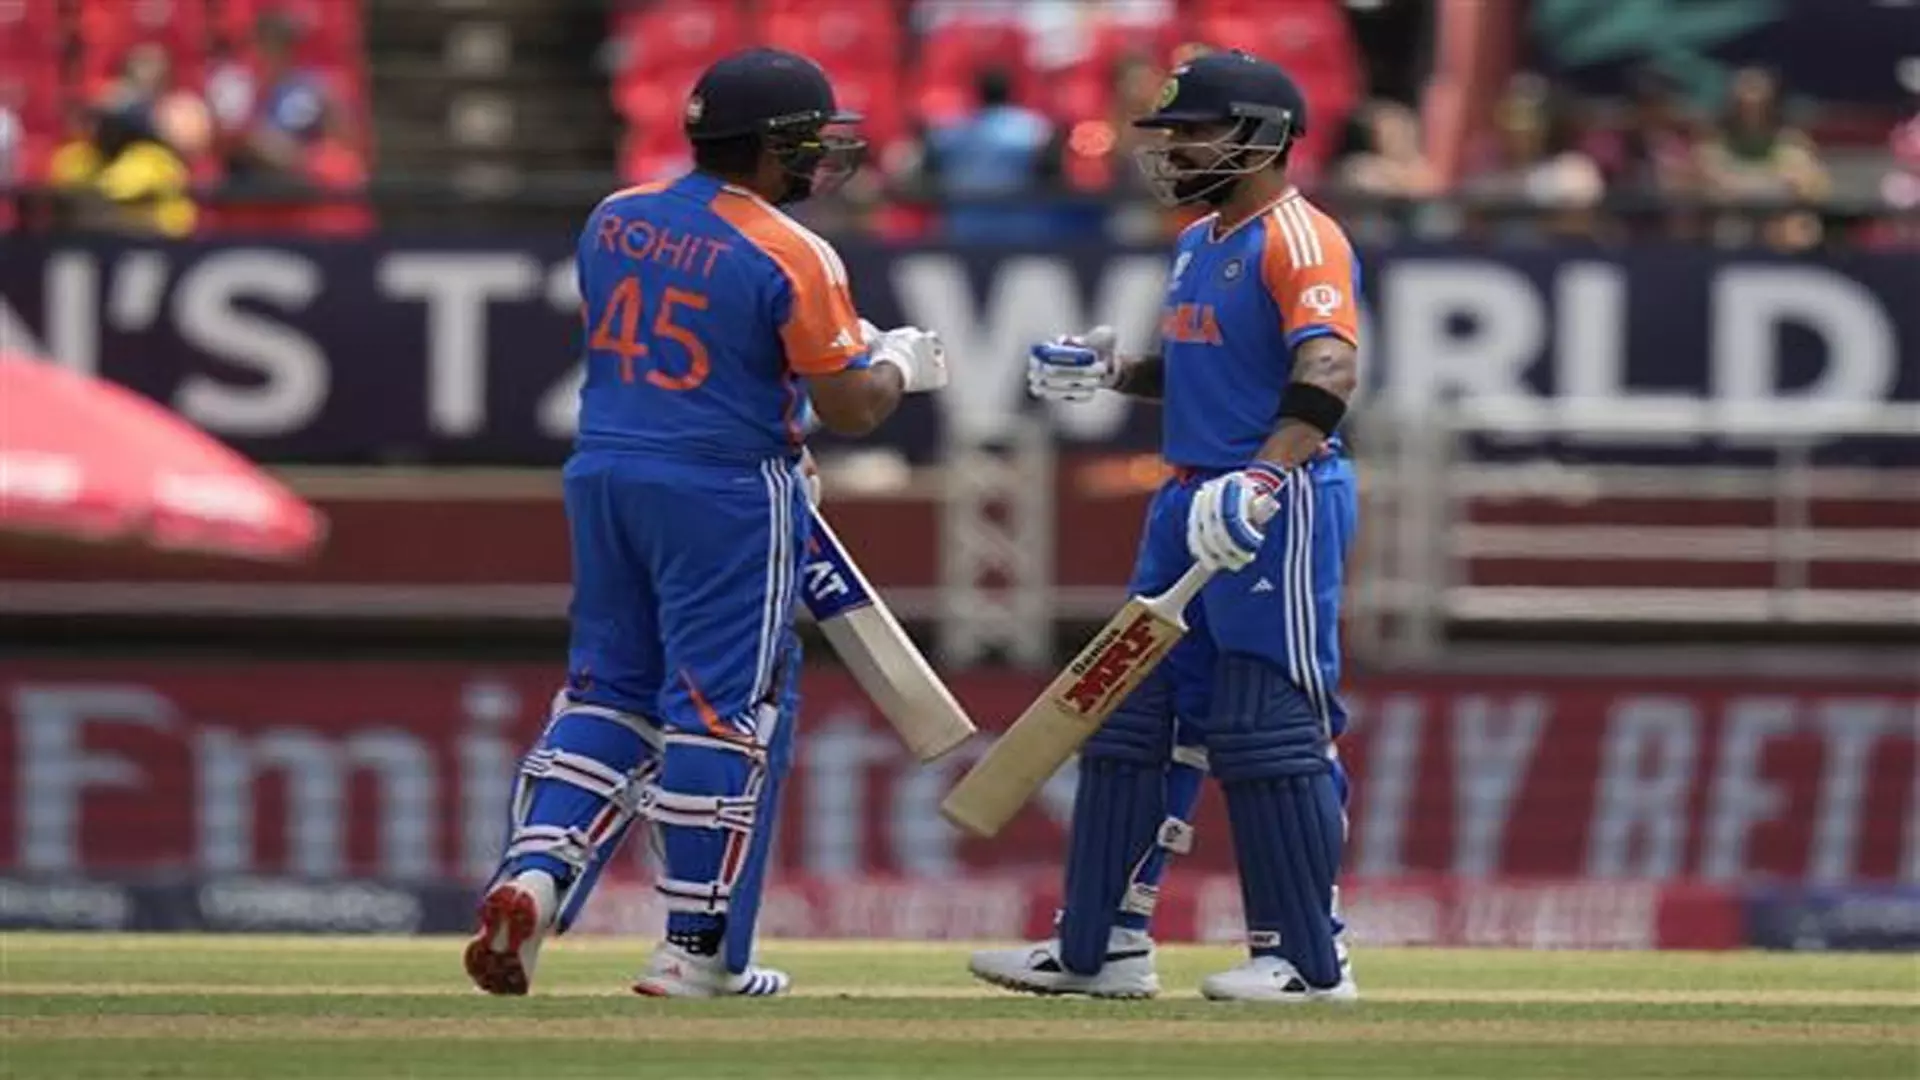 Sports: संभवत: आखिरी बार रोहित शर्मा और विराट कोहली भारत के लिए टी20I फॉर्मेट में खेलेंगे